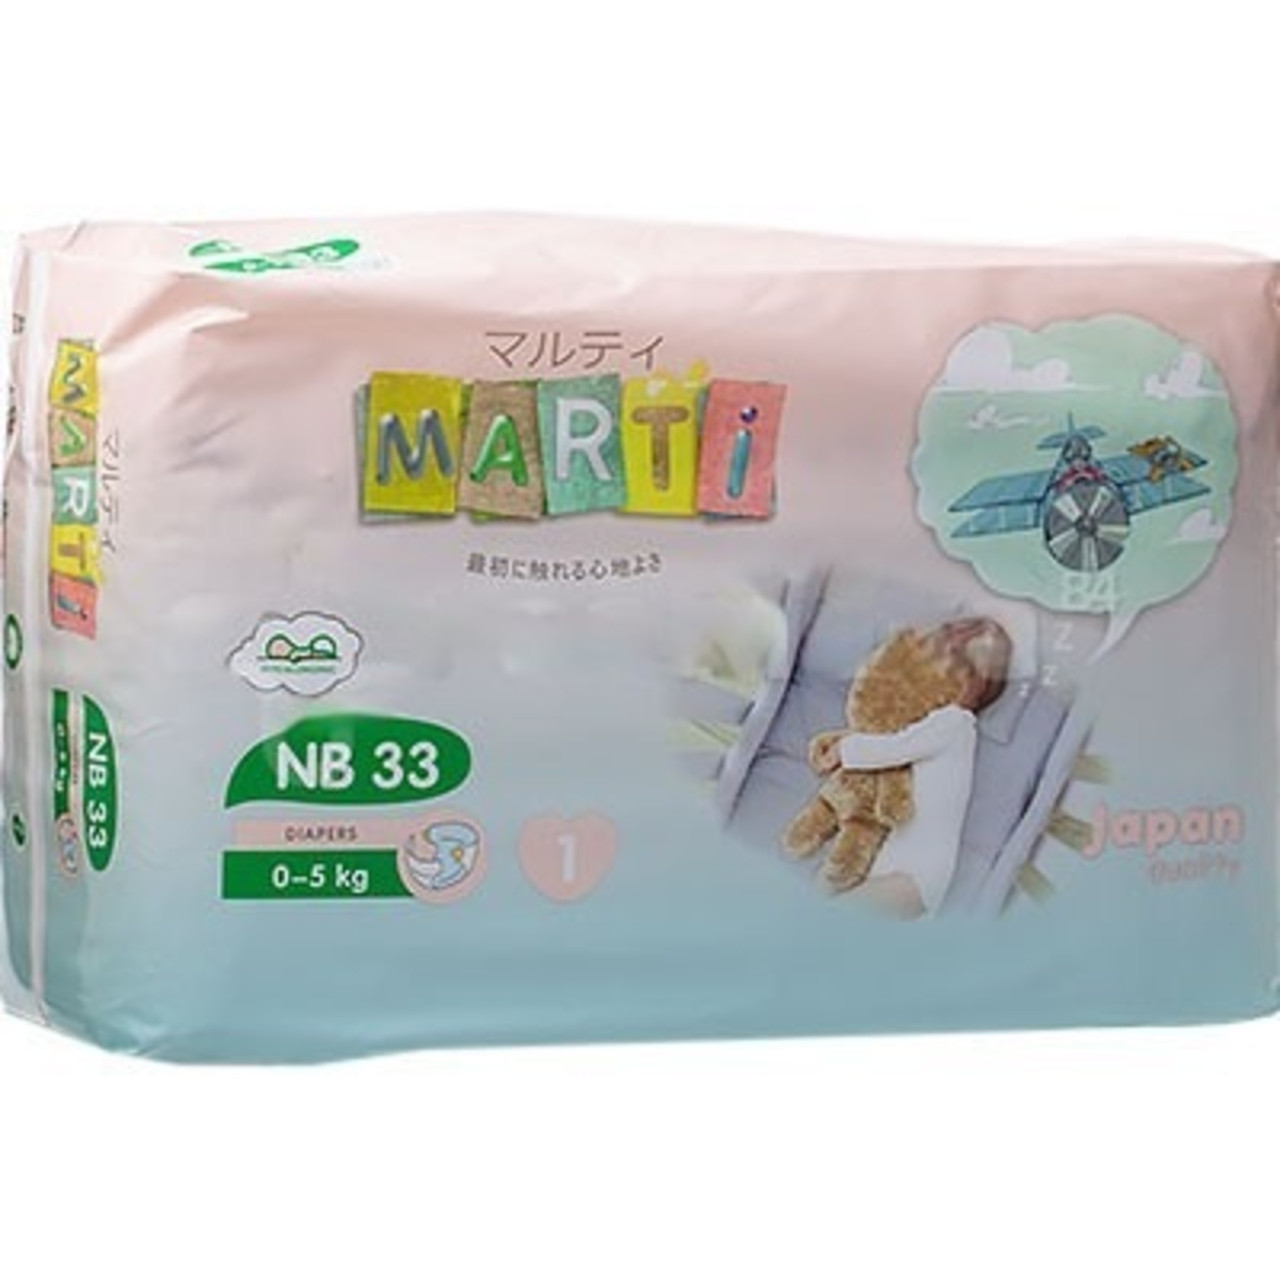 Подгузники Marti NB 33 (до 5 кг)